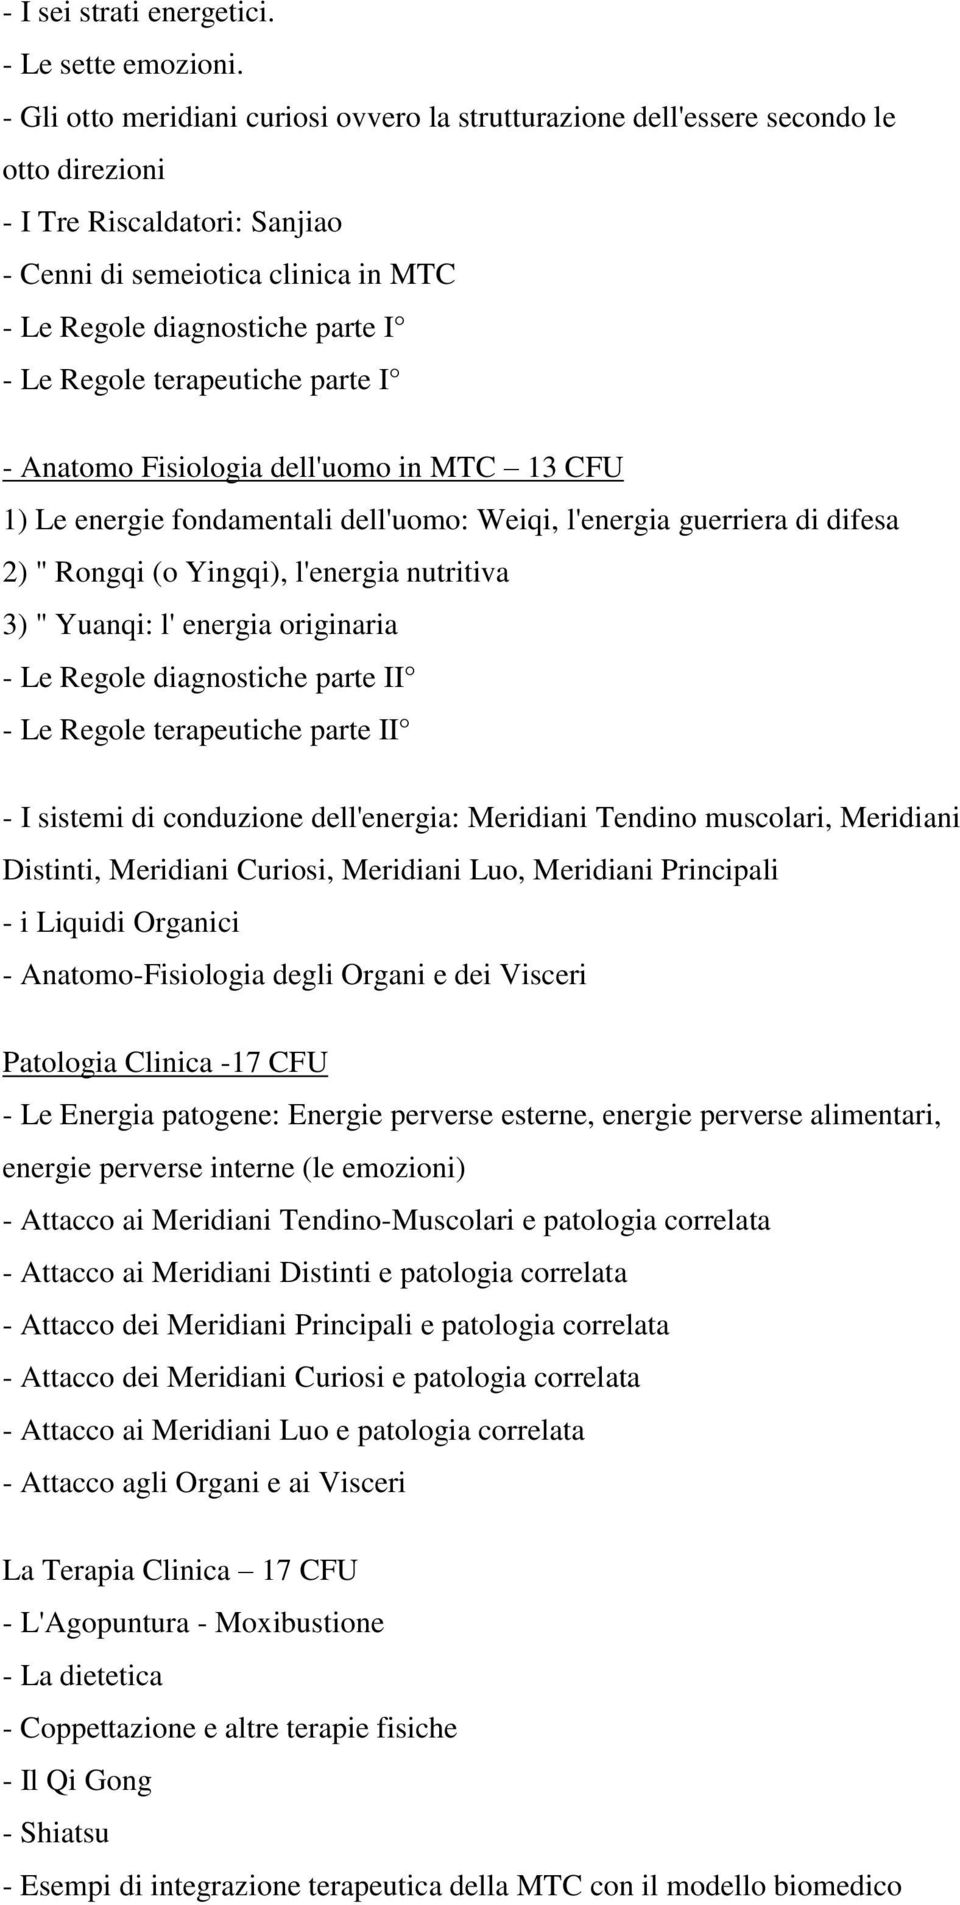 Regole terapeutiche parte I - Anatomo Fisiologia dell'uomo in MTC 13 CFU 1) Le energie fondamentali dell'uomo: Weiqi, l'energia guerriera di difesa 2) " Rongqi (o Yingqi), l'energia nutritiva 3) "